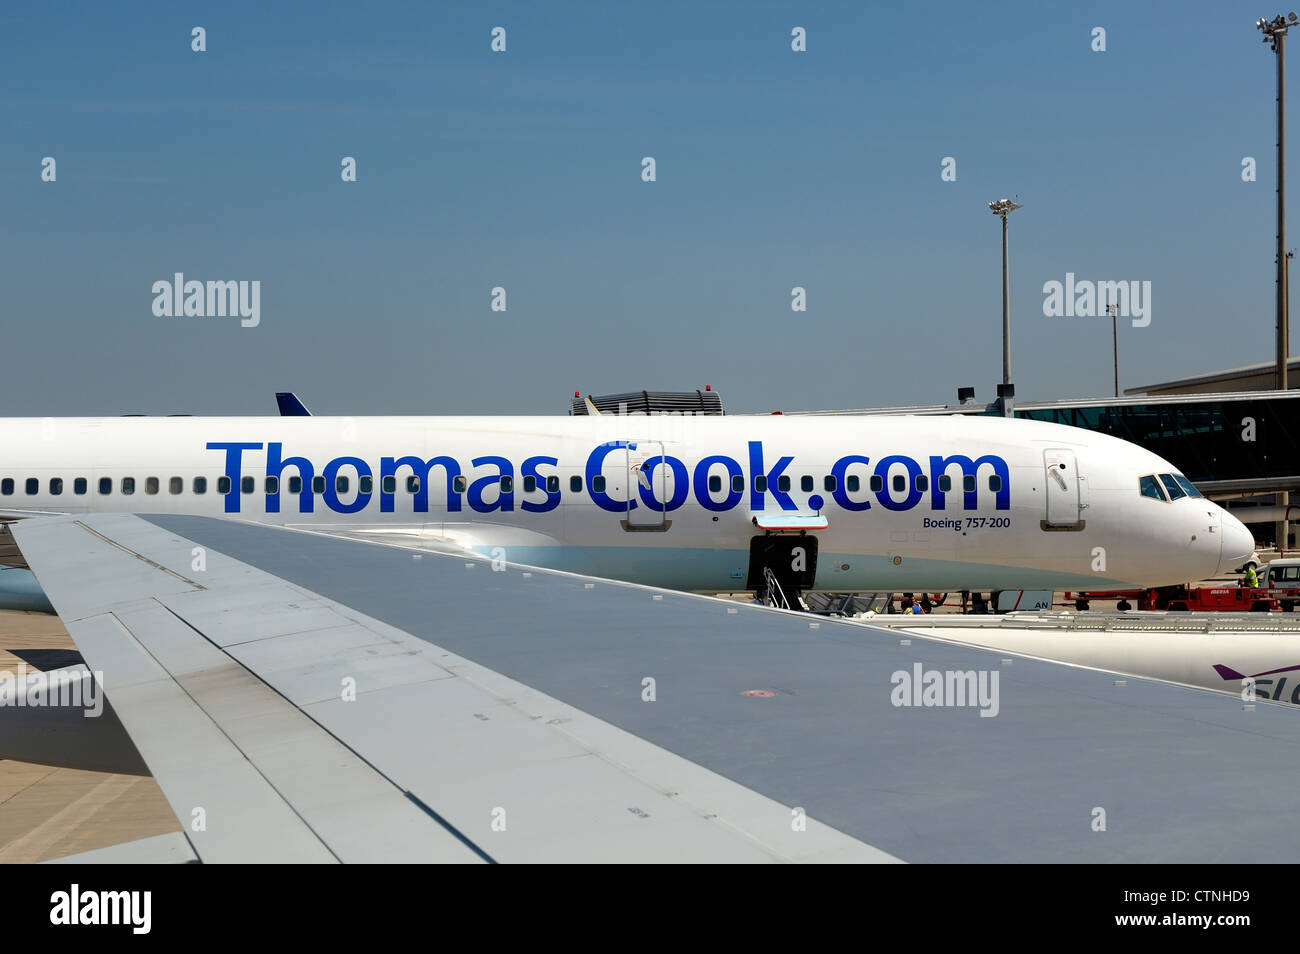 Thomas cook.com airbus Boeing 757-200 Mahon Minorca spagna Foto Stock